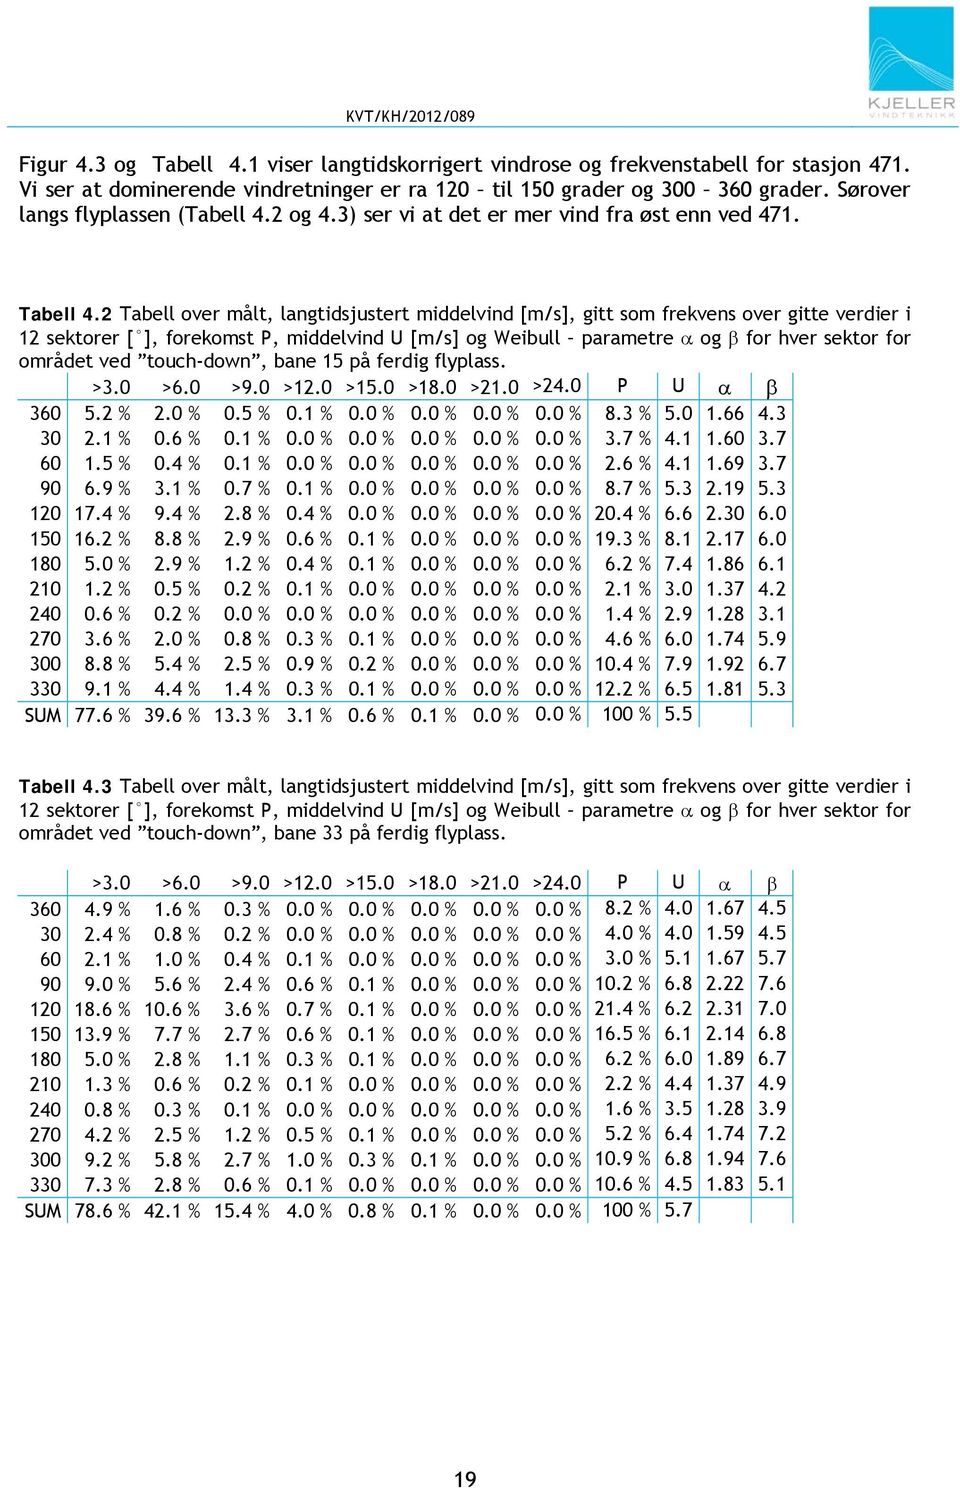 2 Tabell over målt, langtidsjustert middelvind [m/s], gitt som frekvens over gitte verdier i 12 sektorer [ ], forekomst P, middelvind U [m/s] og Weibull parametre og for hver sektor for området ved